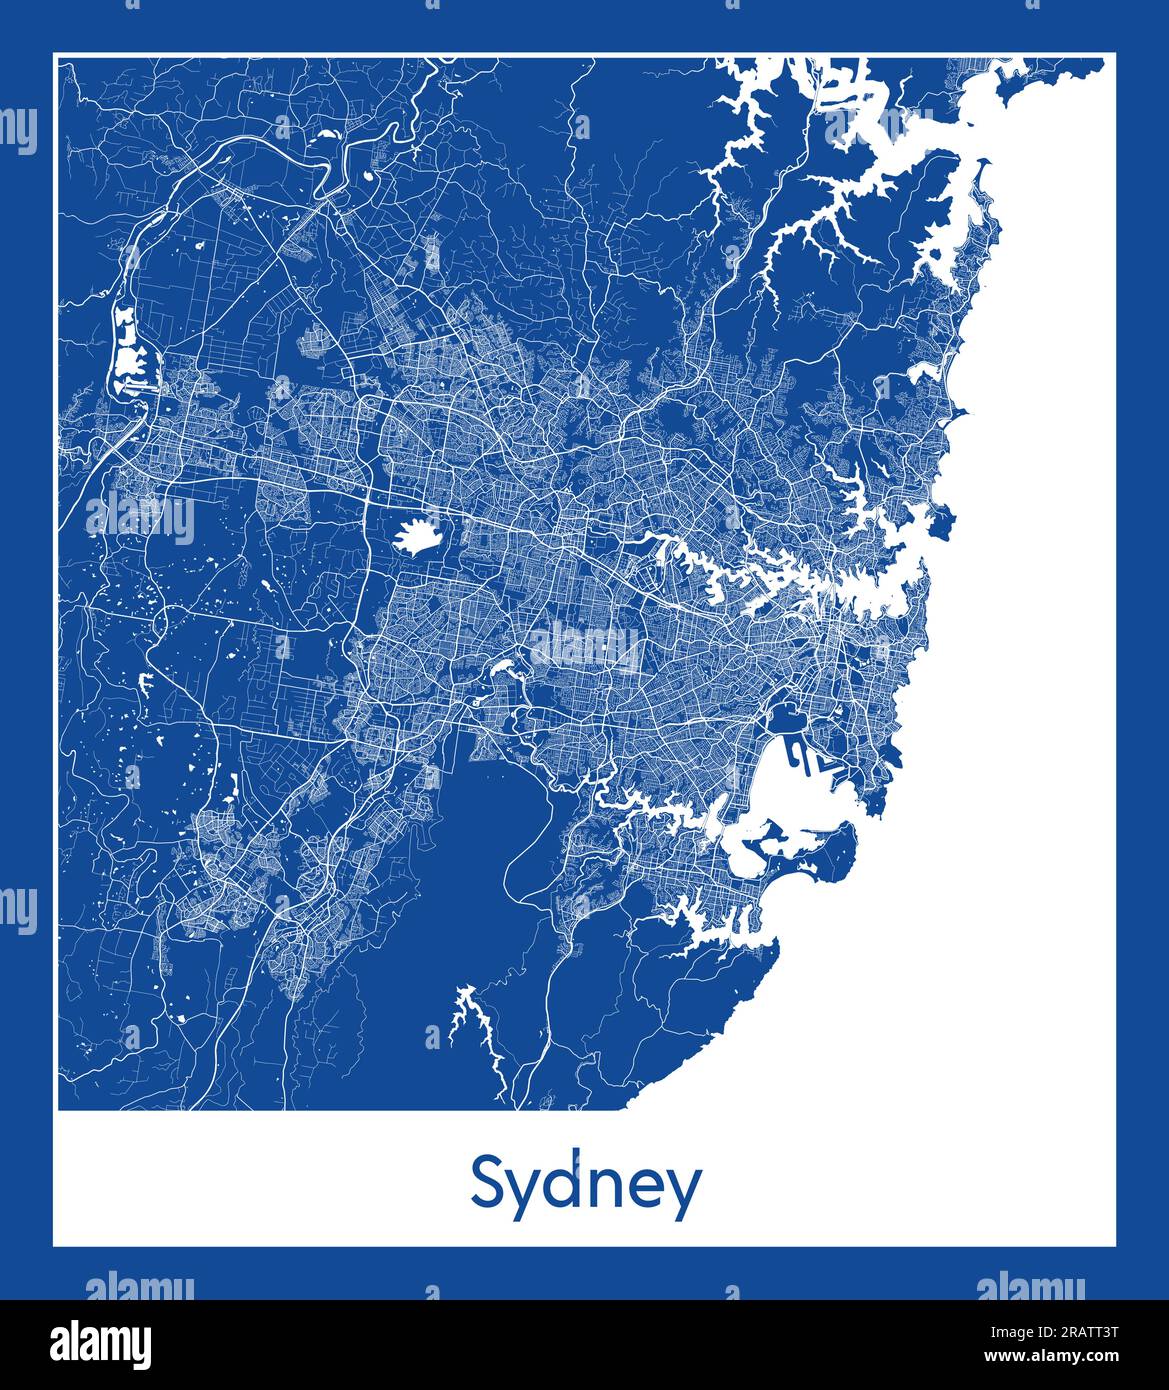 Sydney Australia mapa de la ciudad de impresión azul ilustración vectorial Ilustración del Vector